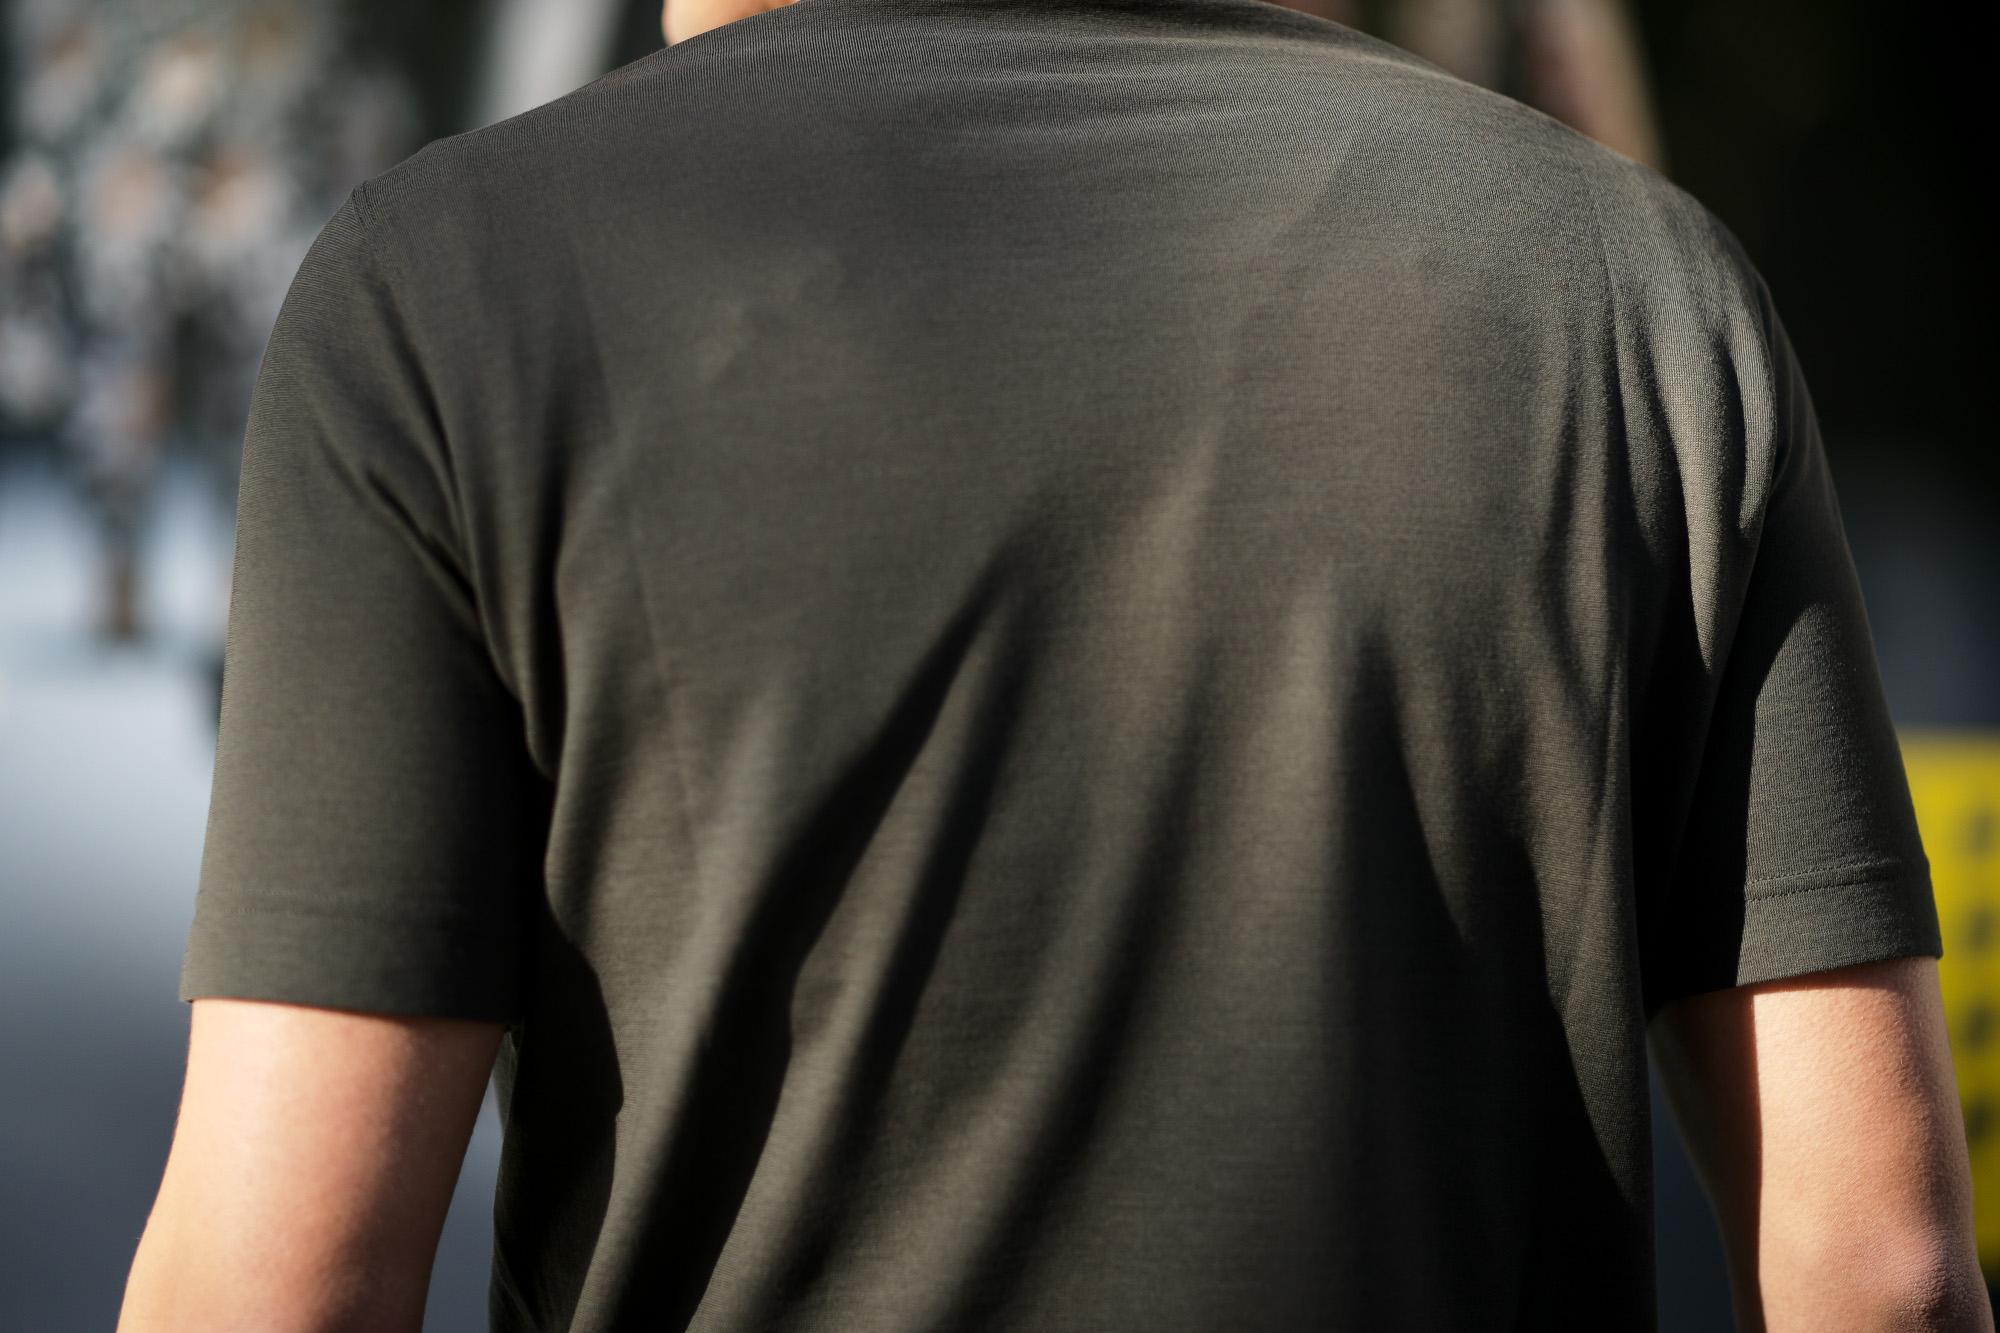 ZANONE(ザノーネ) Crew Neck T-shirt (クルーネックTシャツ) ice cotton アイスコットン Tシャツ OLIVE (オリーブ・Z0049) MADE IN ITALY(イタリア製) 2020 春夏 【ご予約受付中】愛知 名古屋 altoediritto アルトエデリット tee 夏Tシャツ